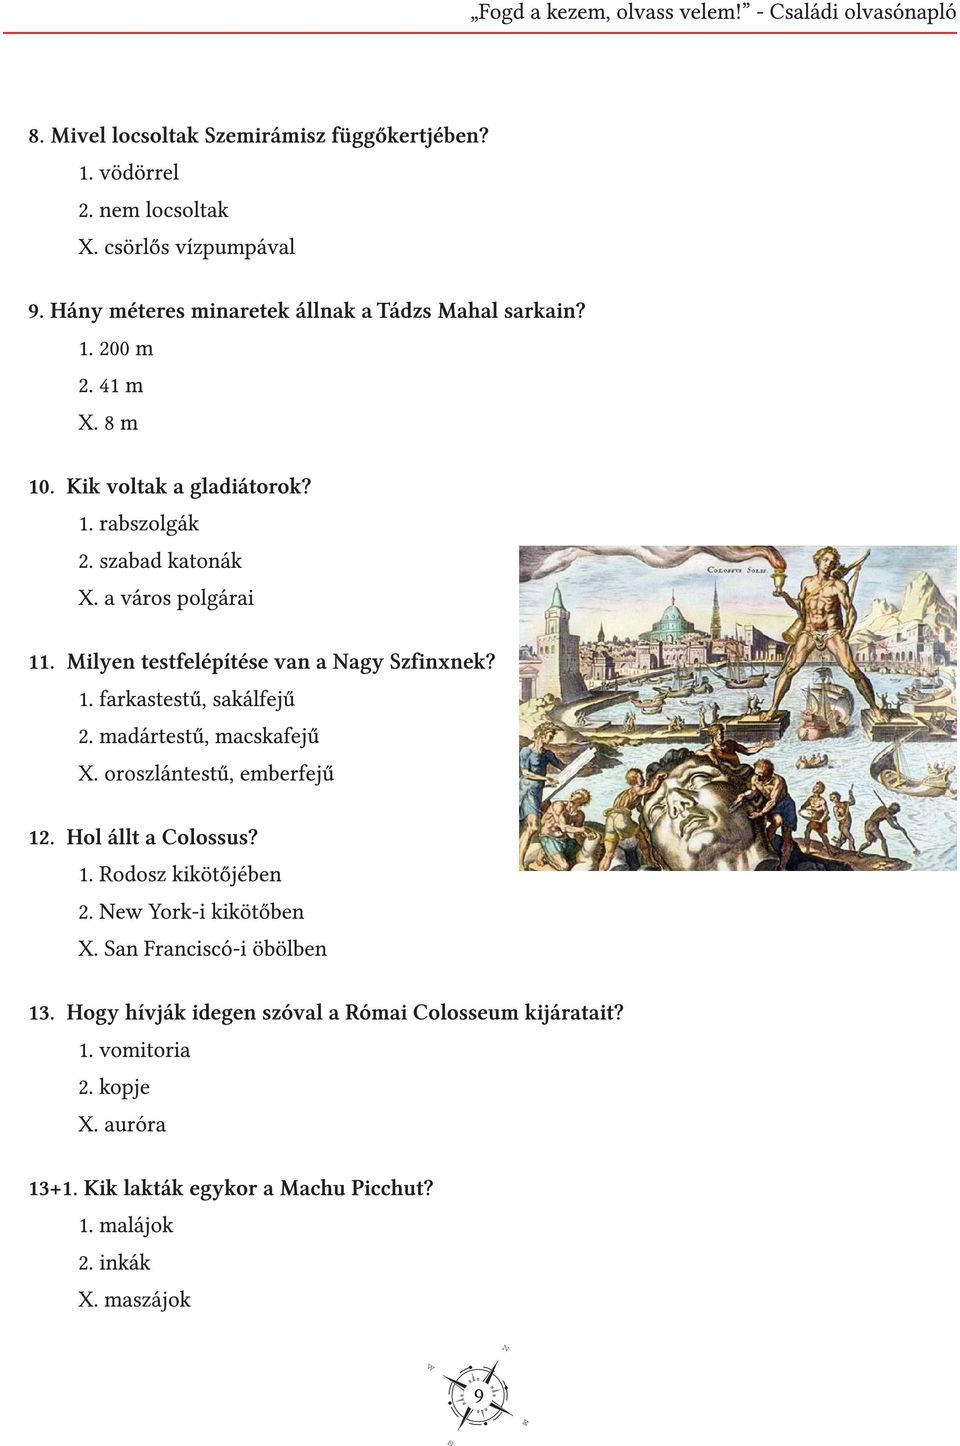 Milyen testfelépítése van a Nagy Szfinxnek? 1. farkastestű, sakálfejű 2. madártestű, macskafejű X. oroszlántestű, emberfejű 12. Hol állt a Colossus? 1. Rodosz kikötőjében 2.